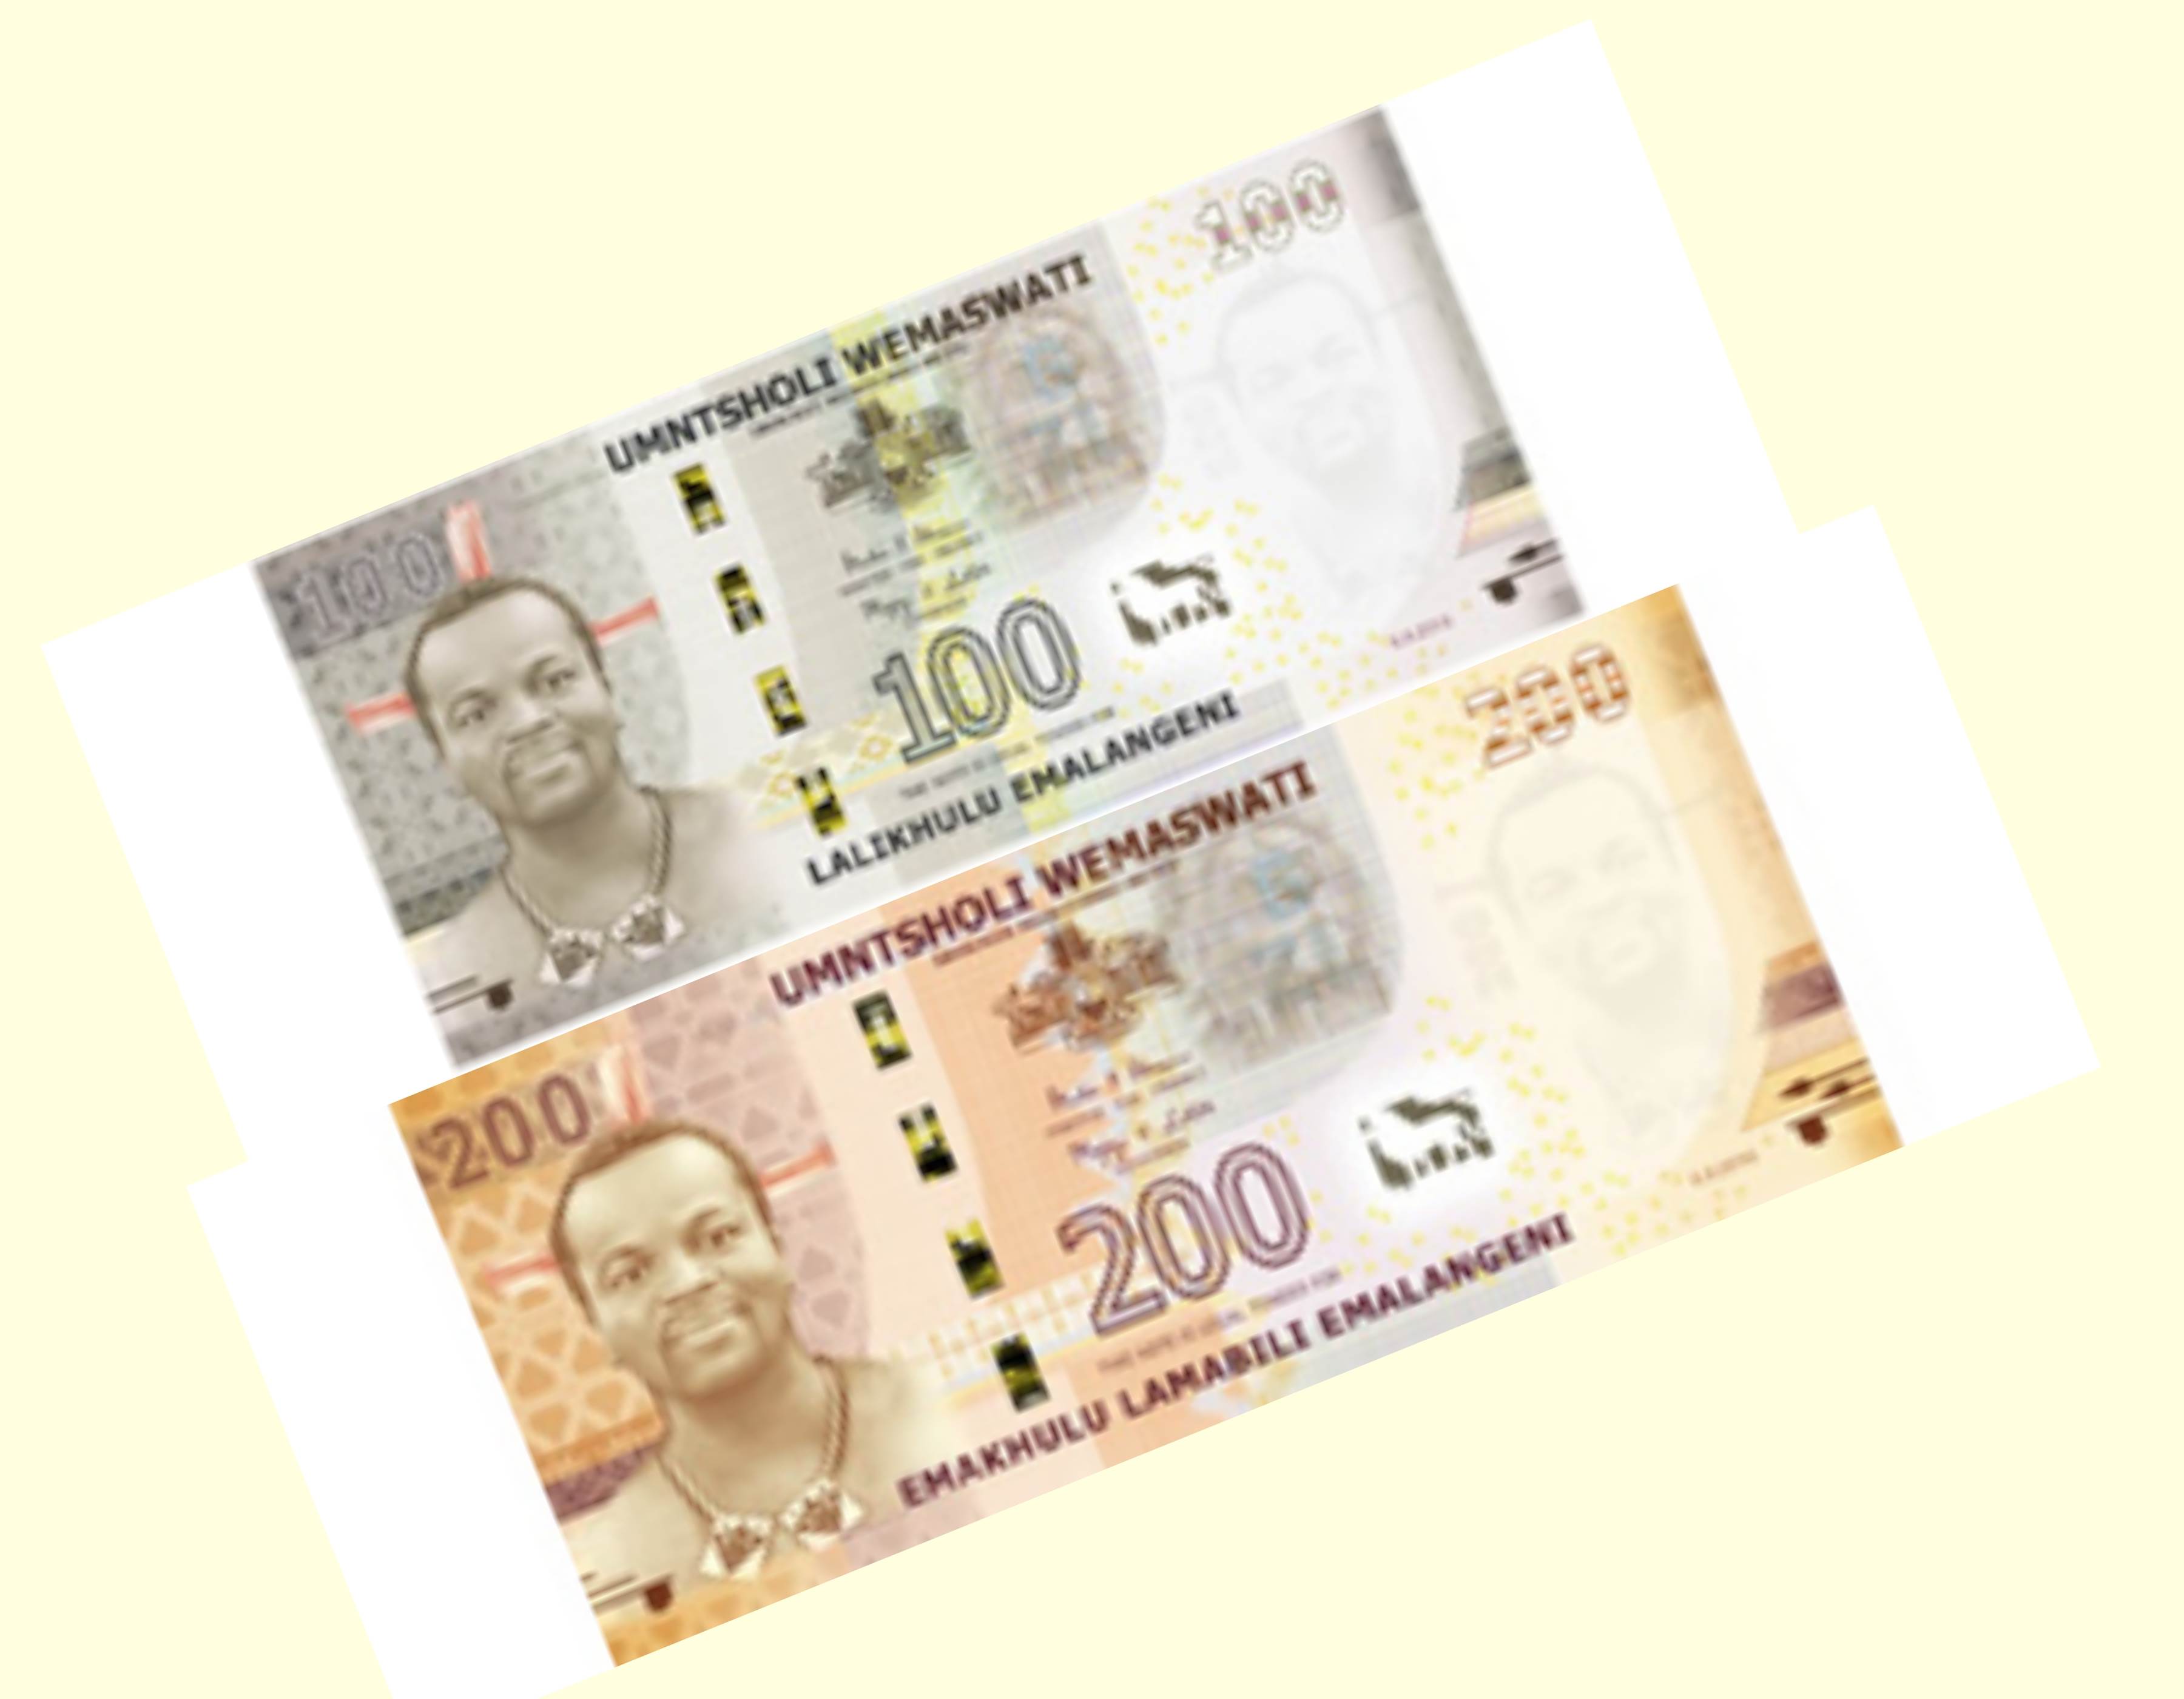 Suazi wydaje nowe banknoty obiegowe o nominałach 100 i 200 emalangeni